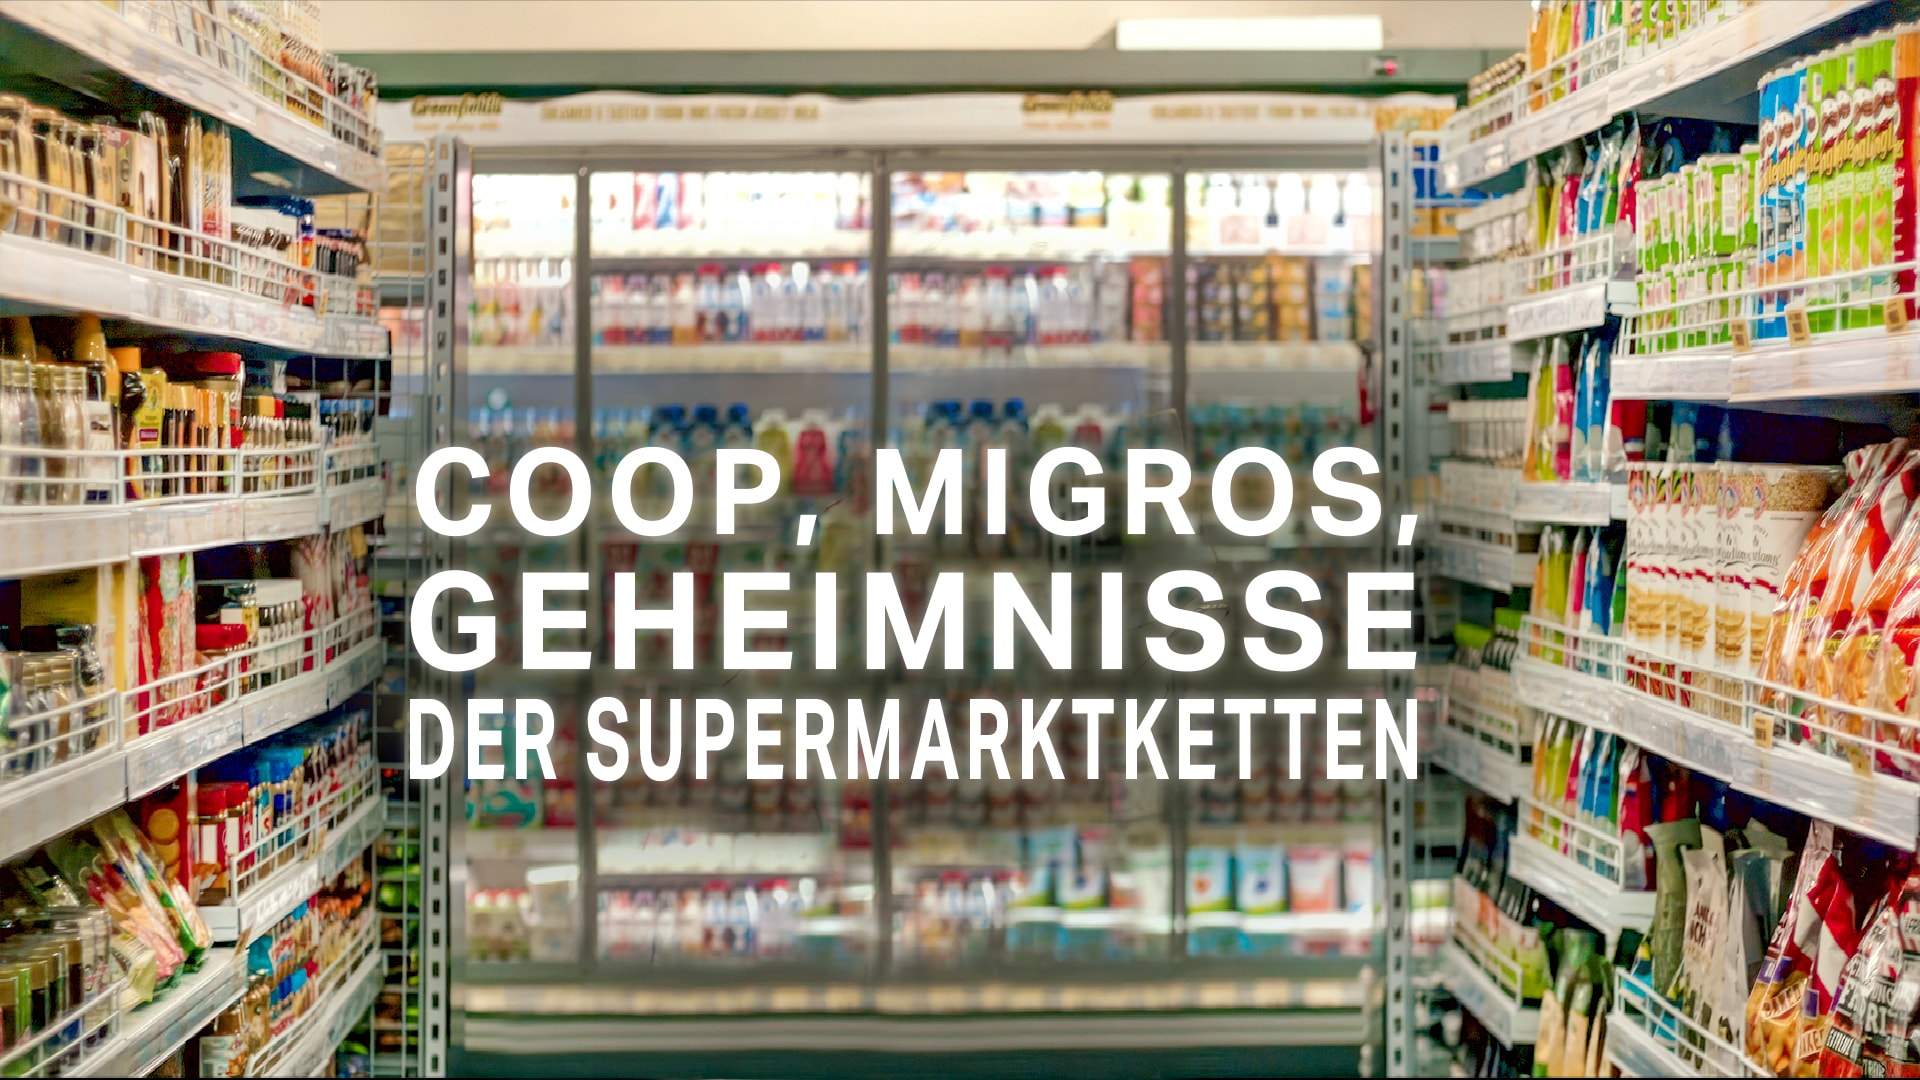 Coop, Migros - Geheimnisse der Supermarktketten